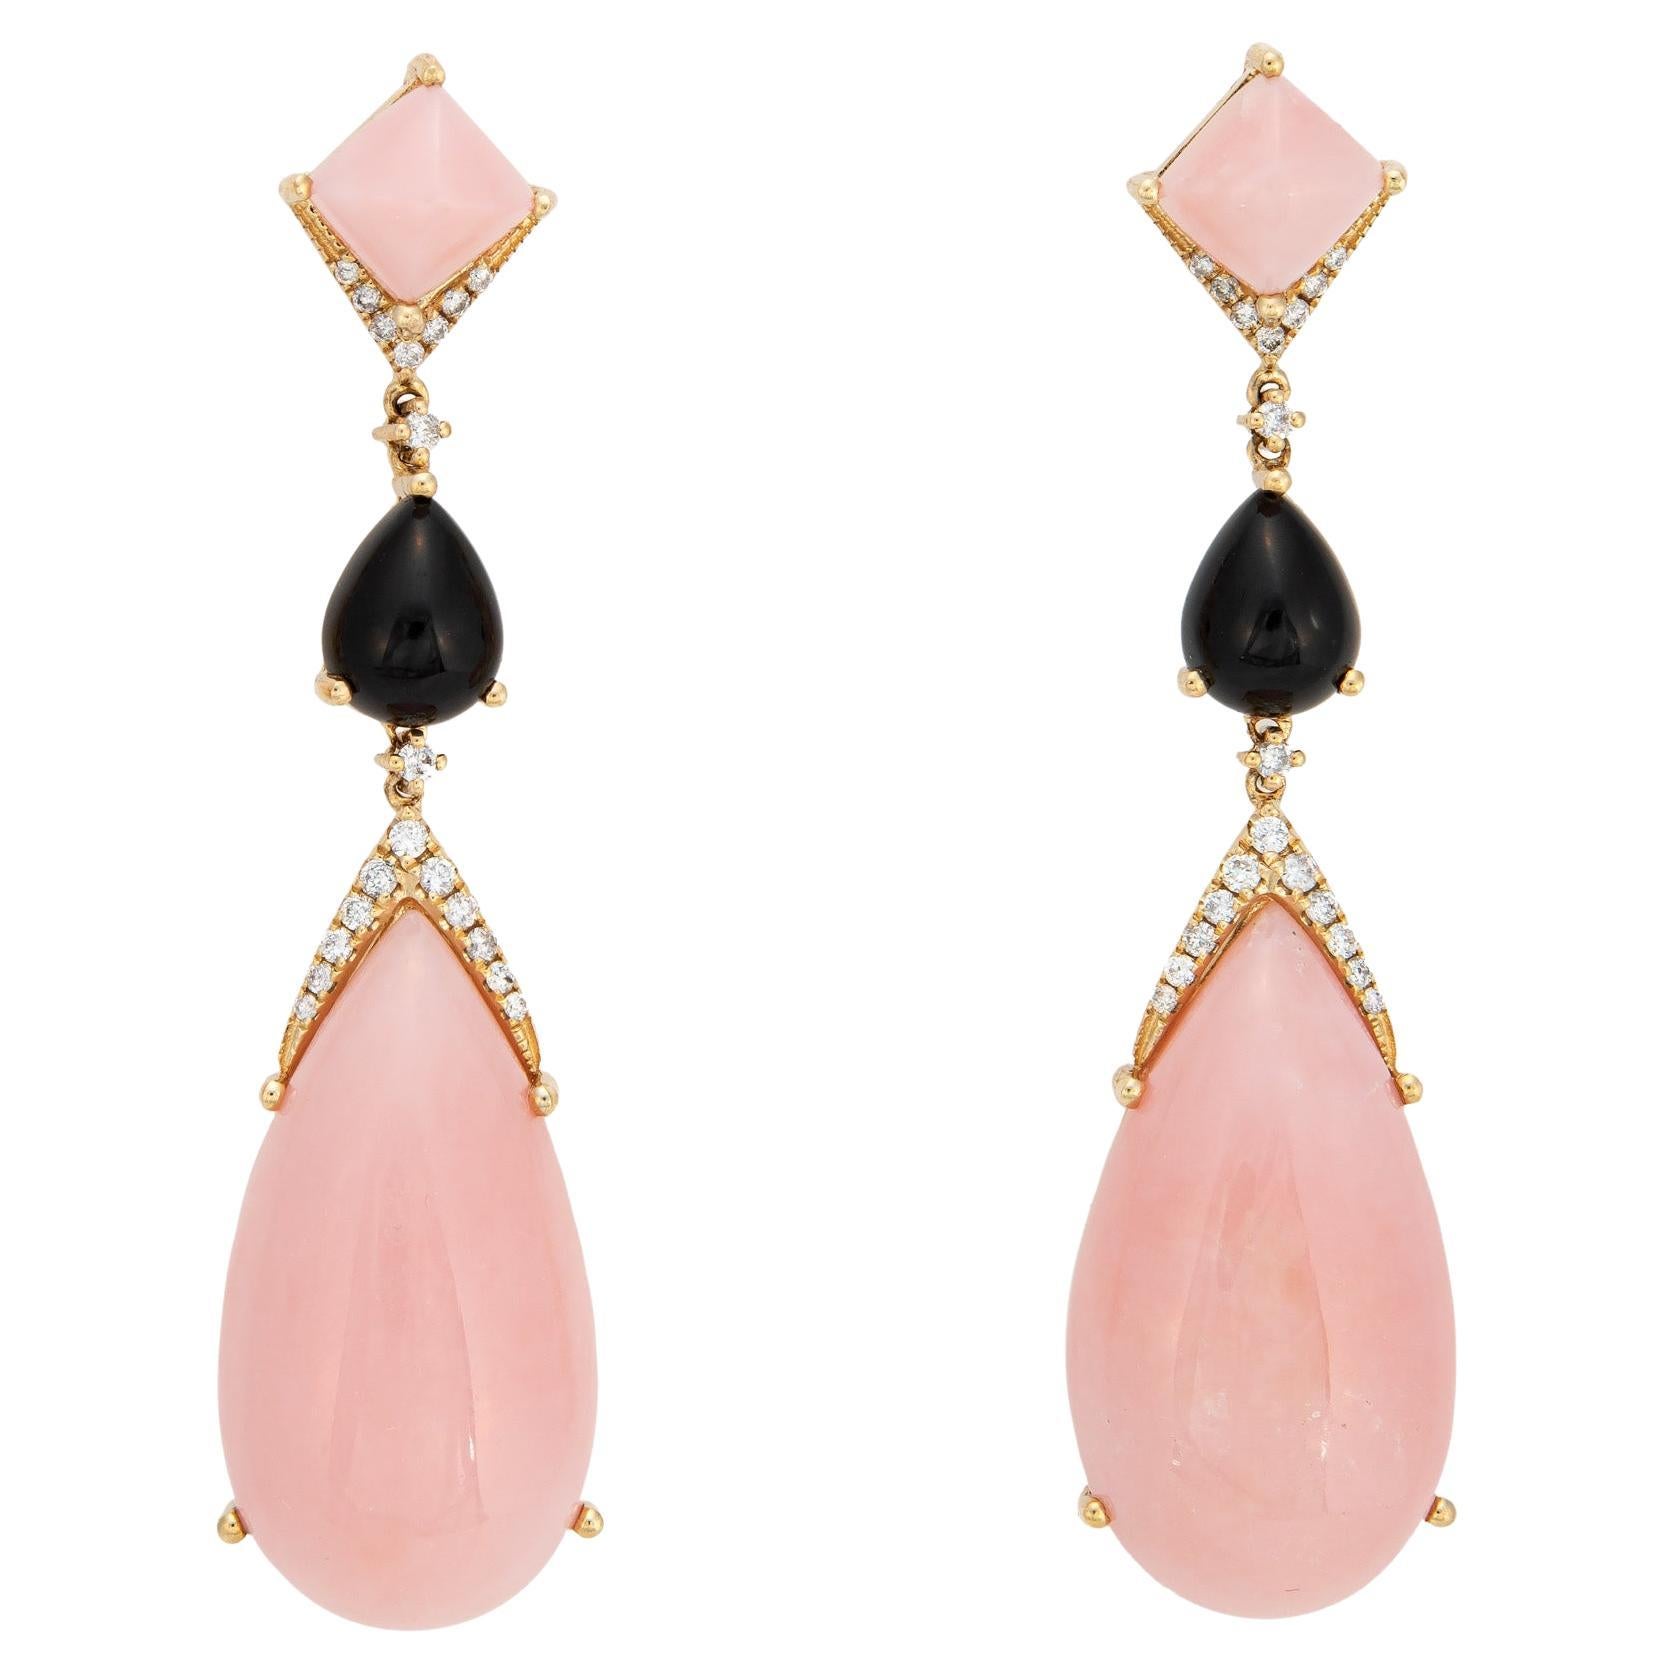 Pink Opal Onyx Diamond Earrings Long Drops 14k Yellow Gold Estate Jewelry For Sale